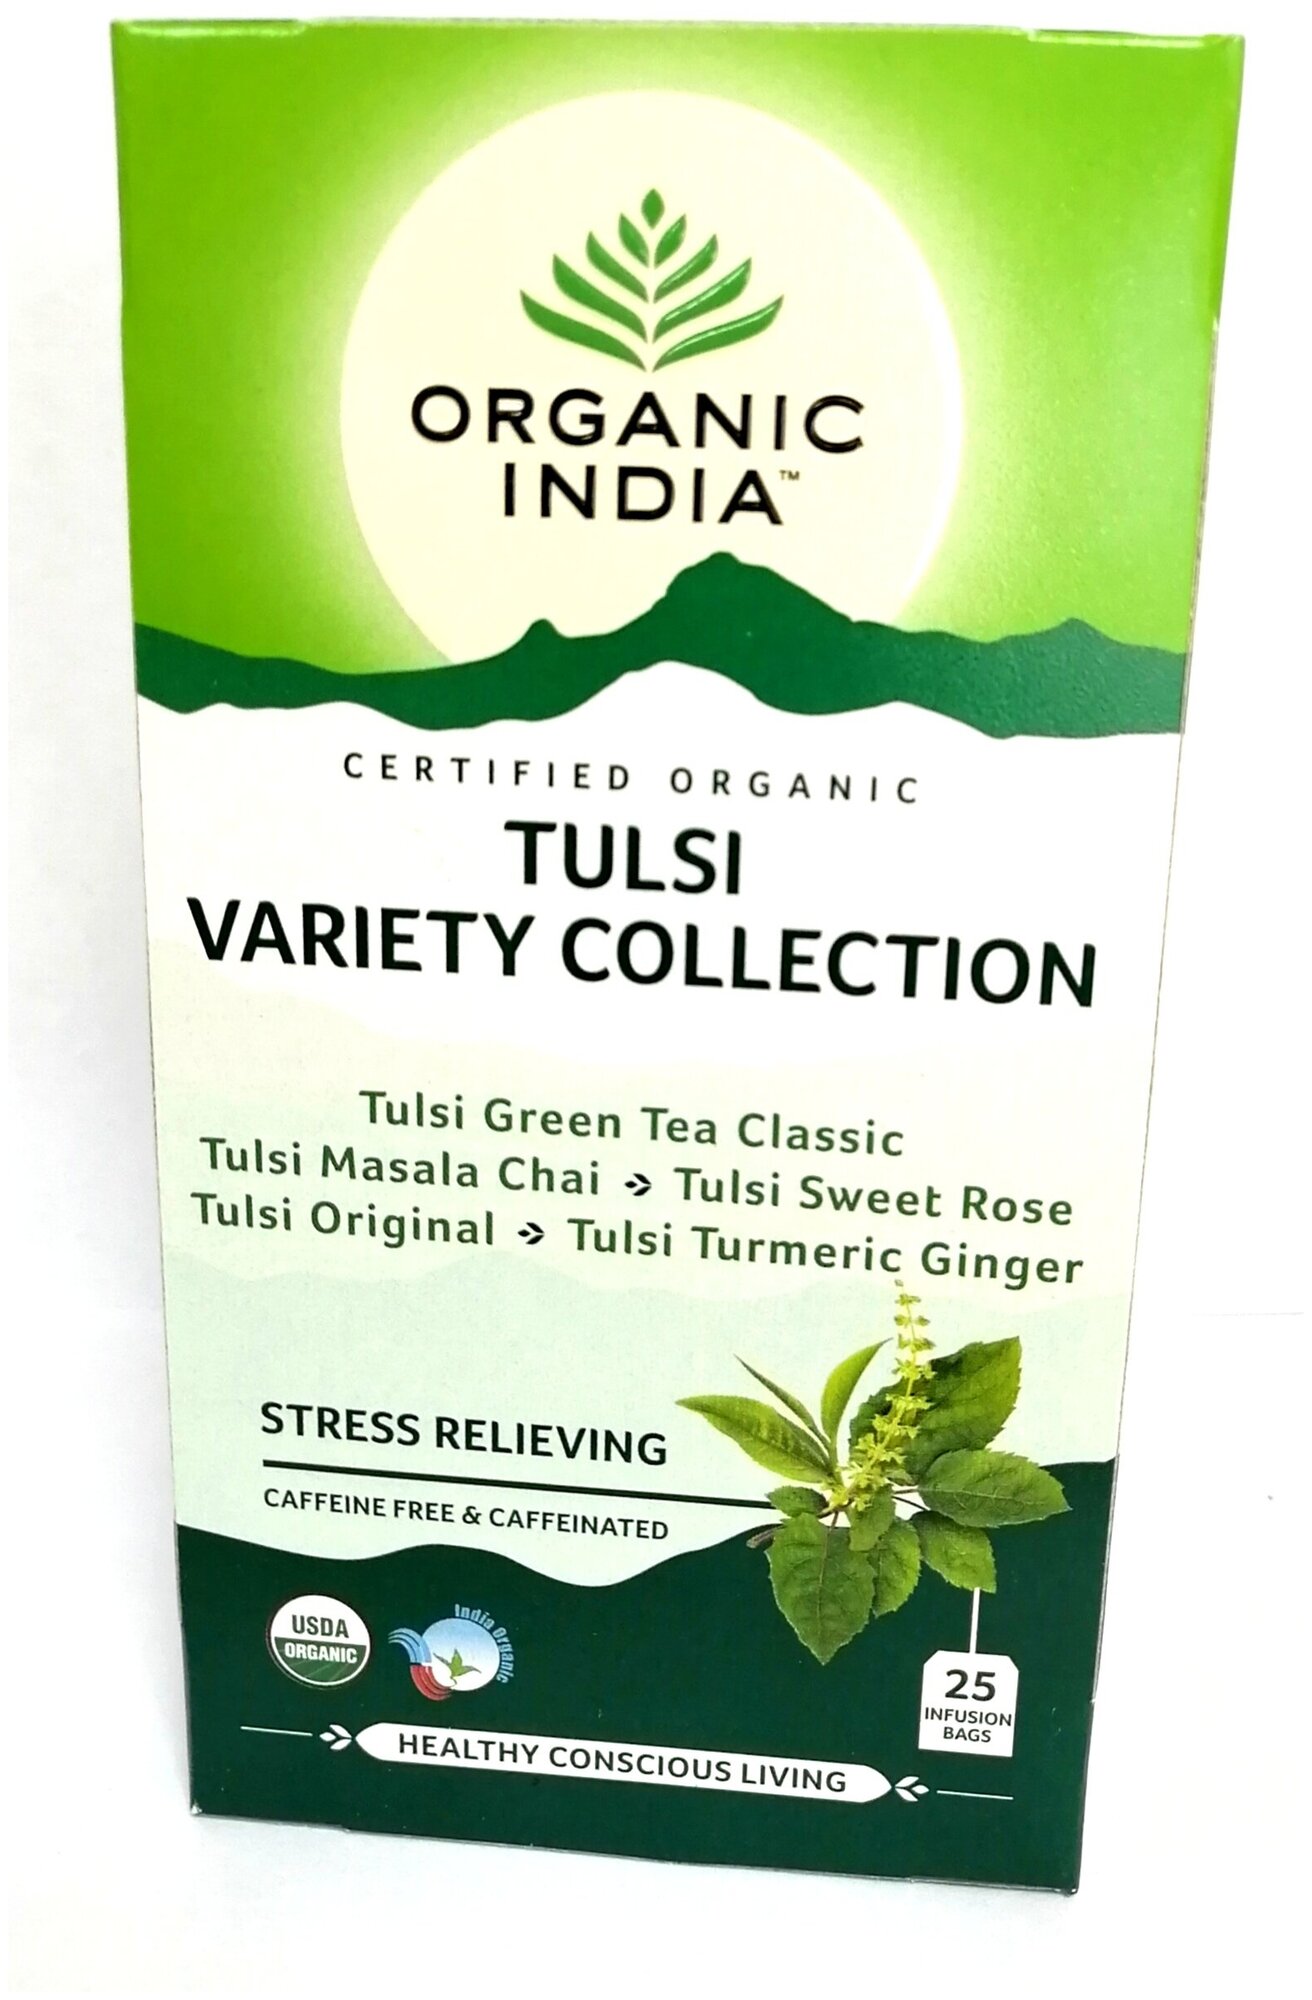 Индийский чайный напиток травяной, т. м. ORGANIC INDIA, Тулси Коллекция вкусов по 25 пакетиков в пачке (в основе везде Базилик), 5 видов